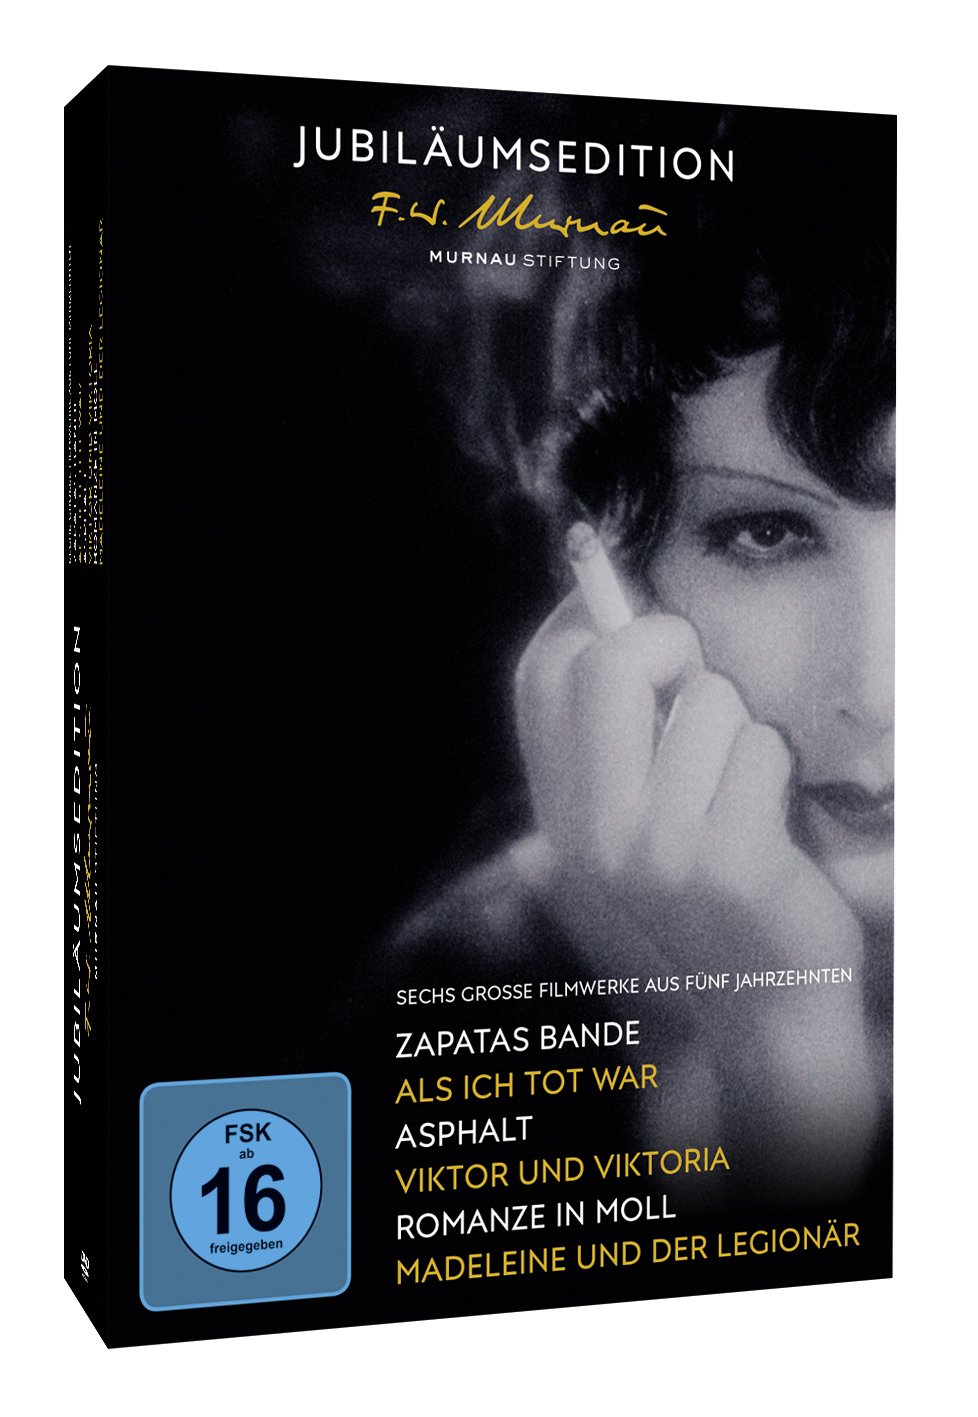 50 Jahre Murnau-Stiftung - Jubiläumsedition (5 DVDs)